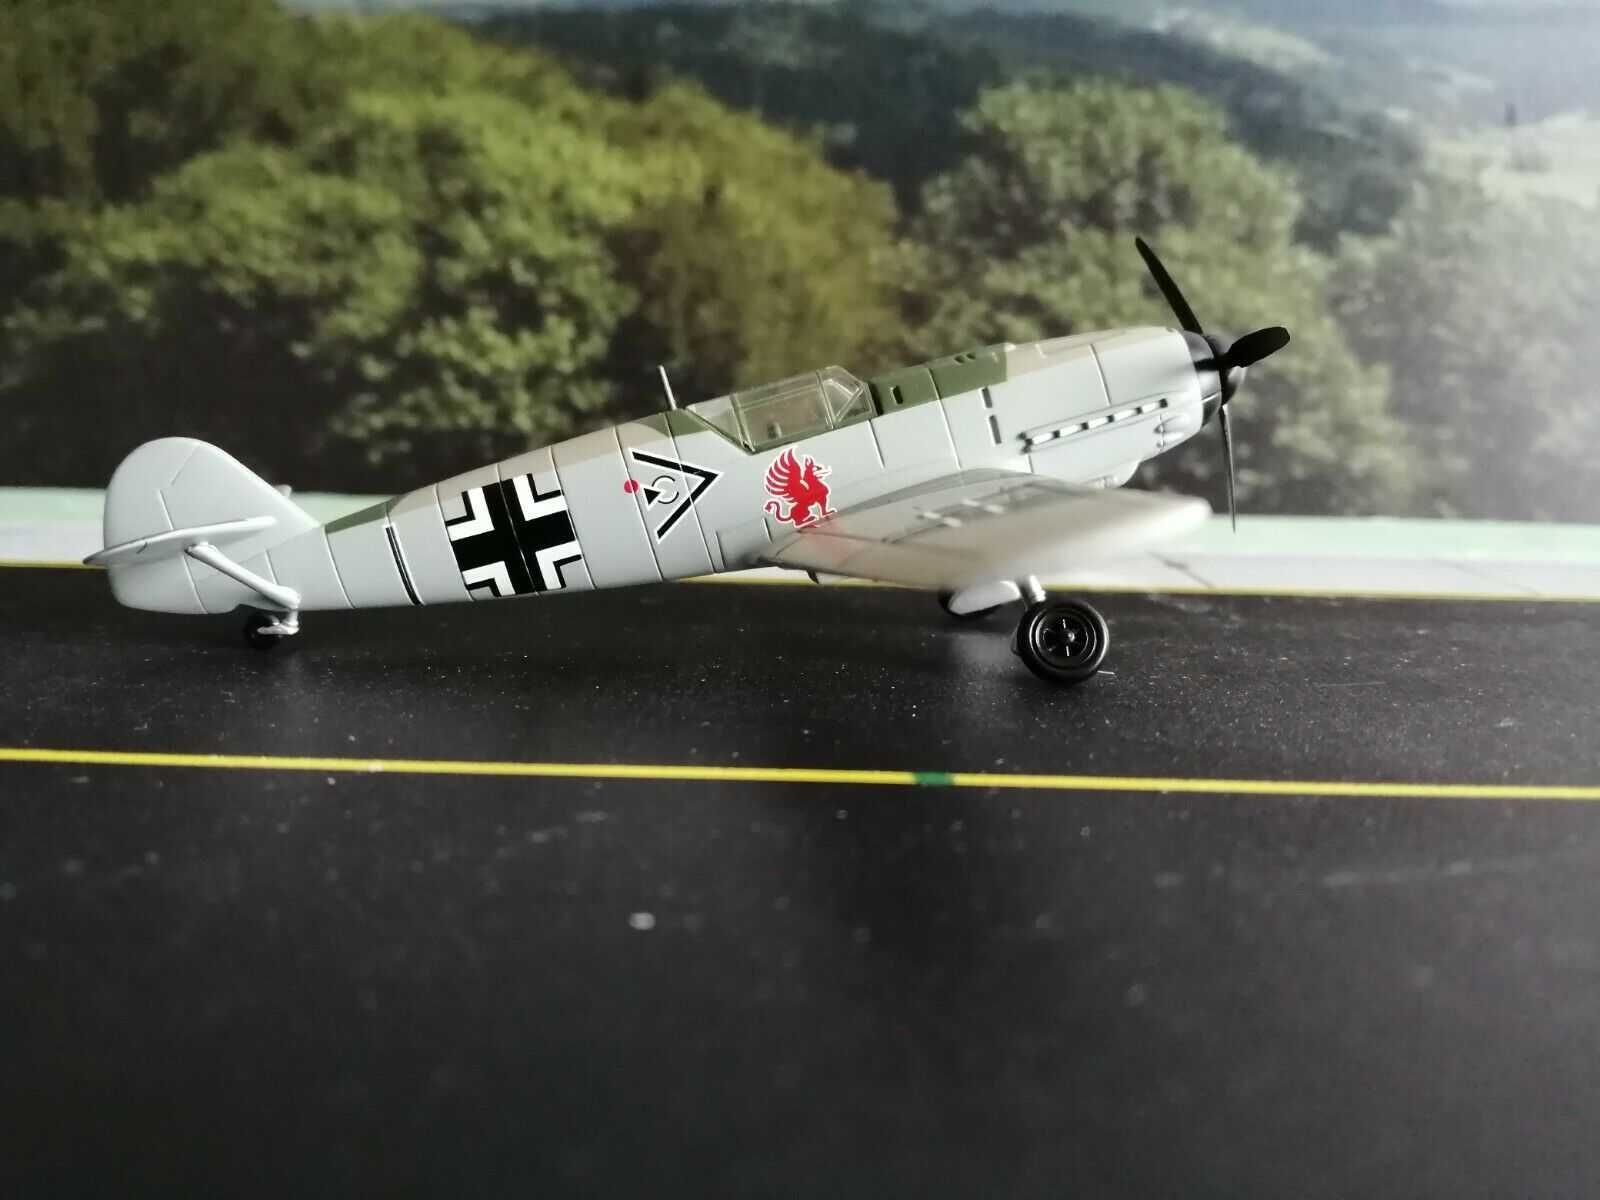 model diecast Herpa H0 1:87 Messerschmitt Bf 109E Gallanda